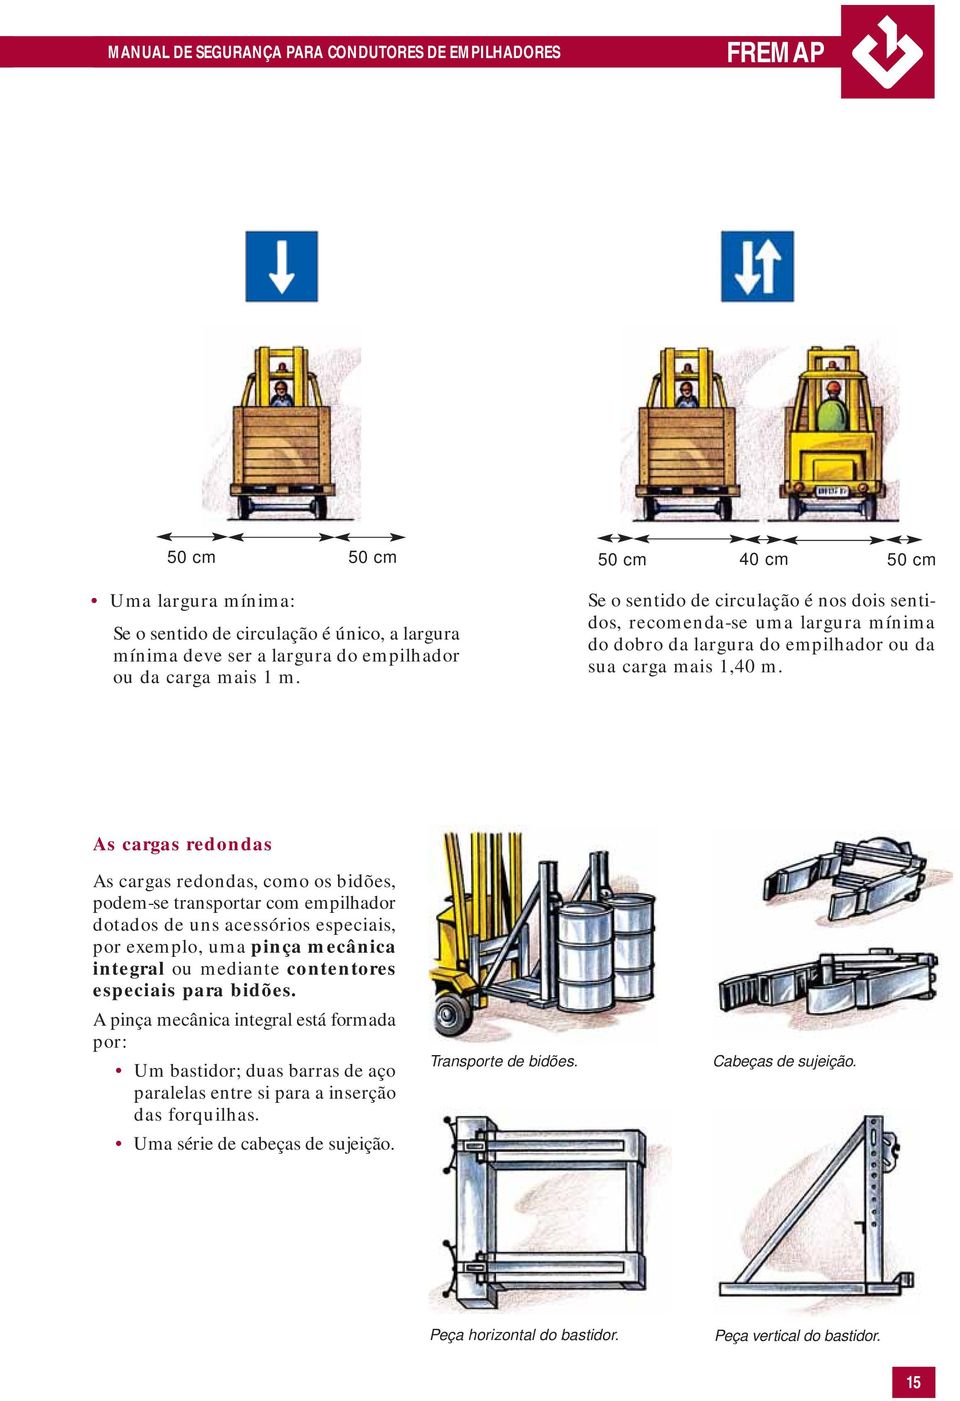 As cargas redondas As cargas redondas, como os bidões, podem-se transportar com empilhador dotados de uns acessórios especiais, por exemplo, uma pinça mecânica integral ou mediante contentores